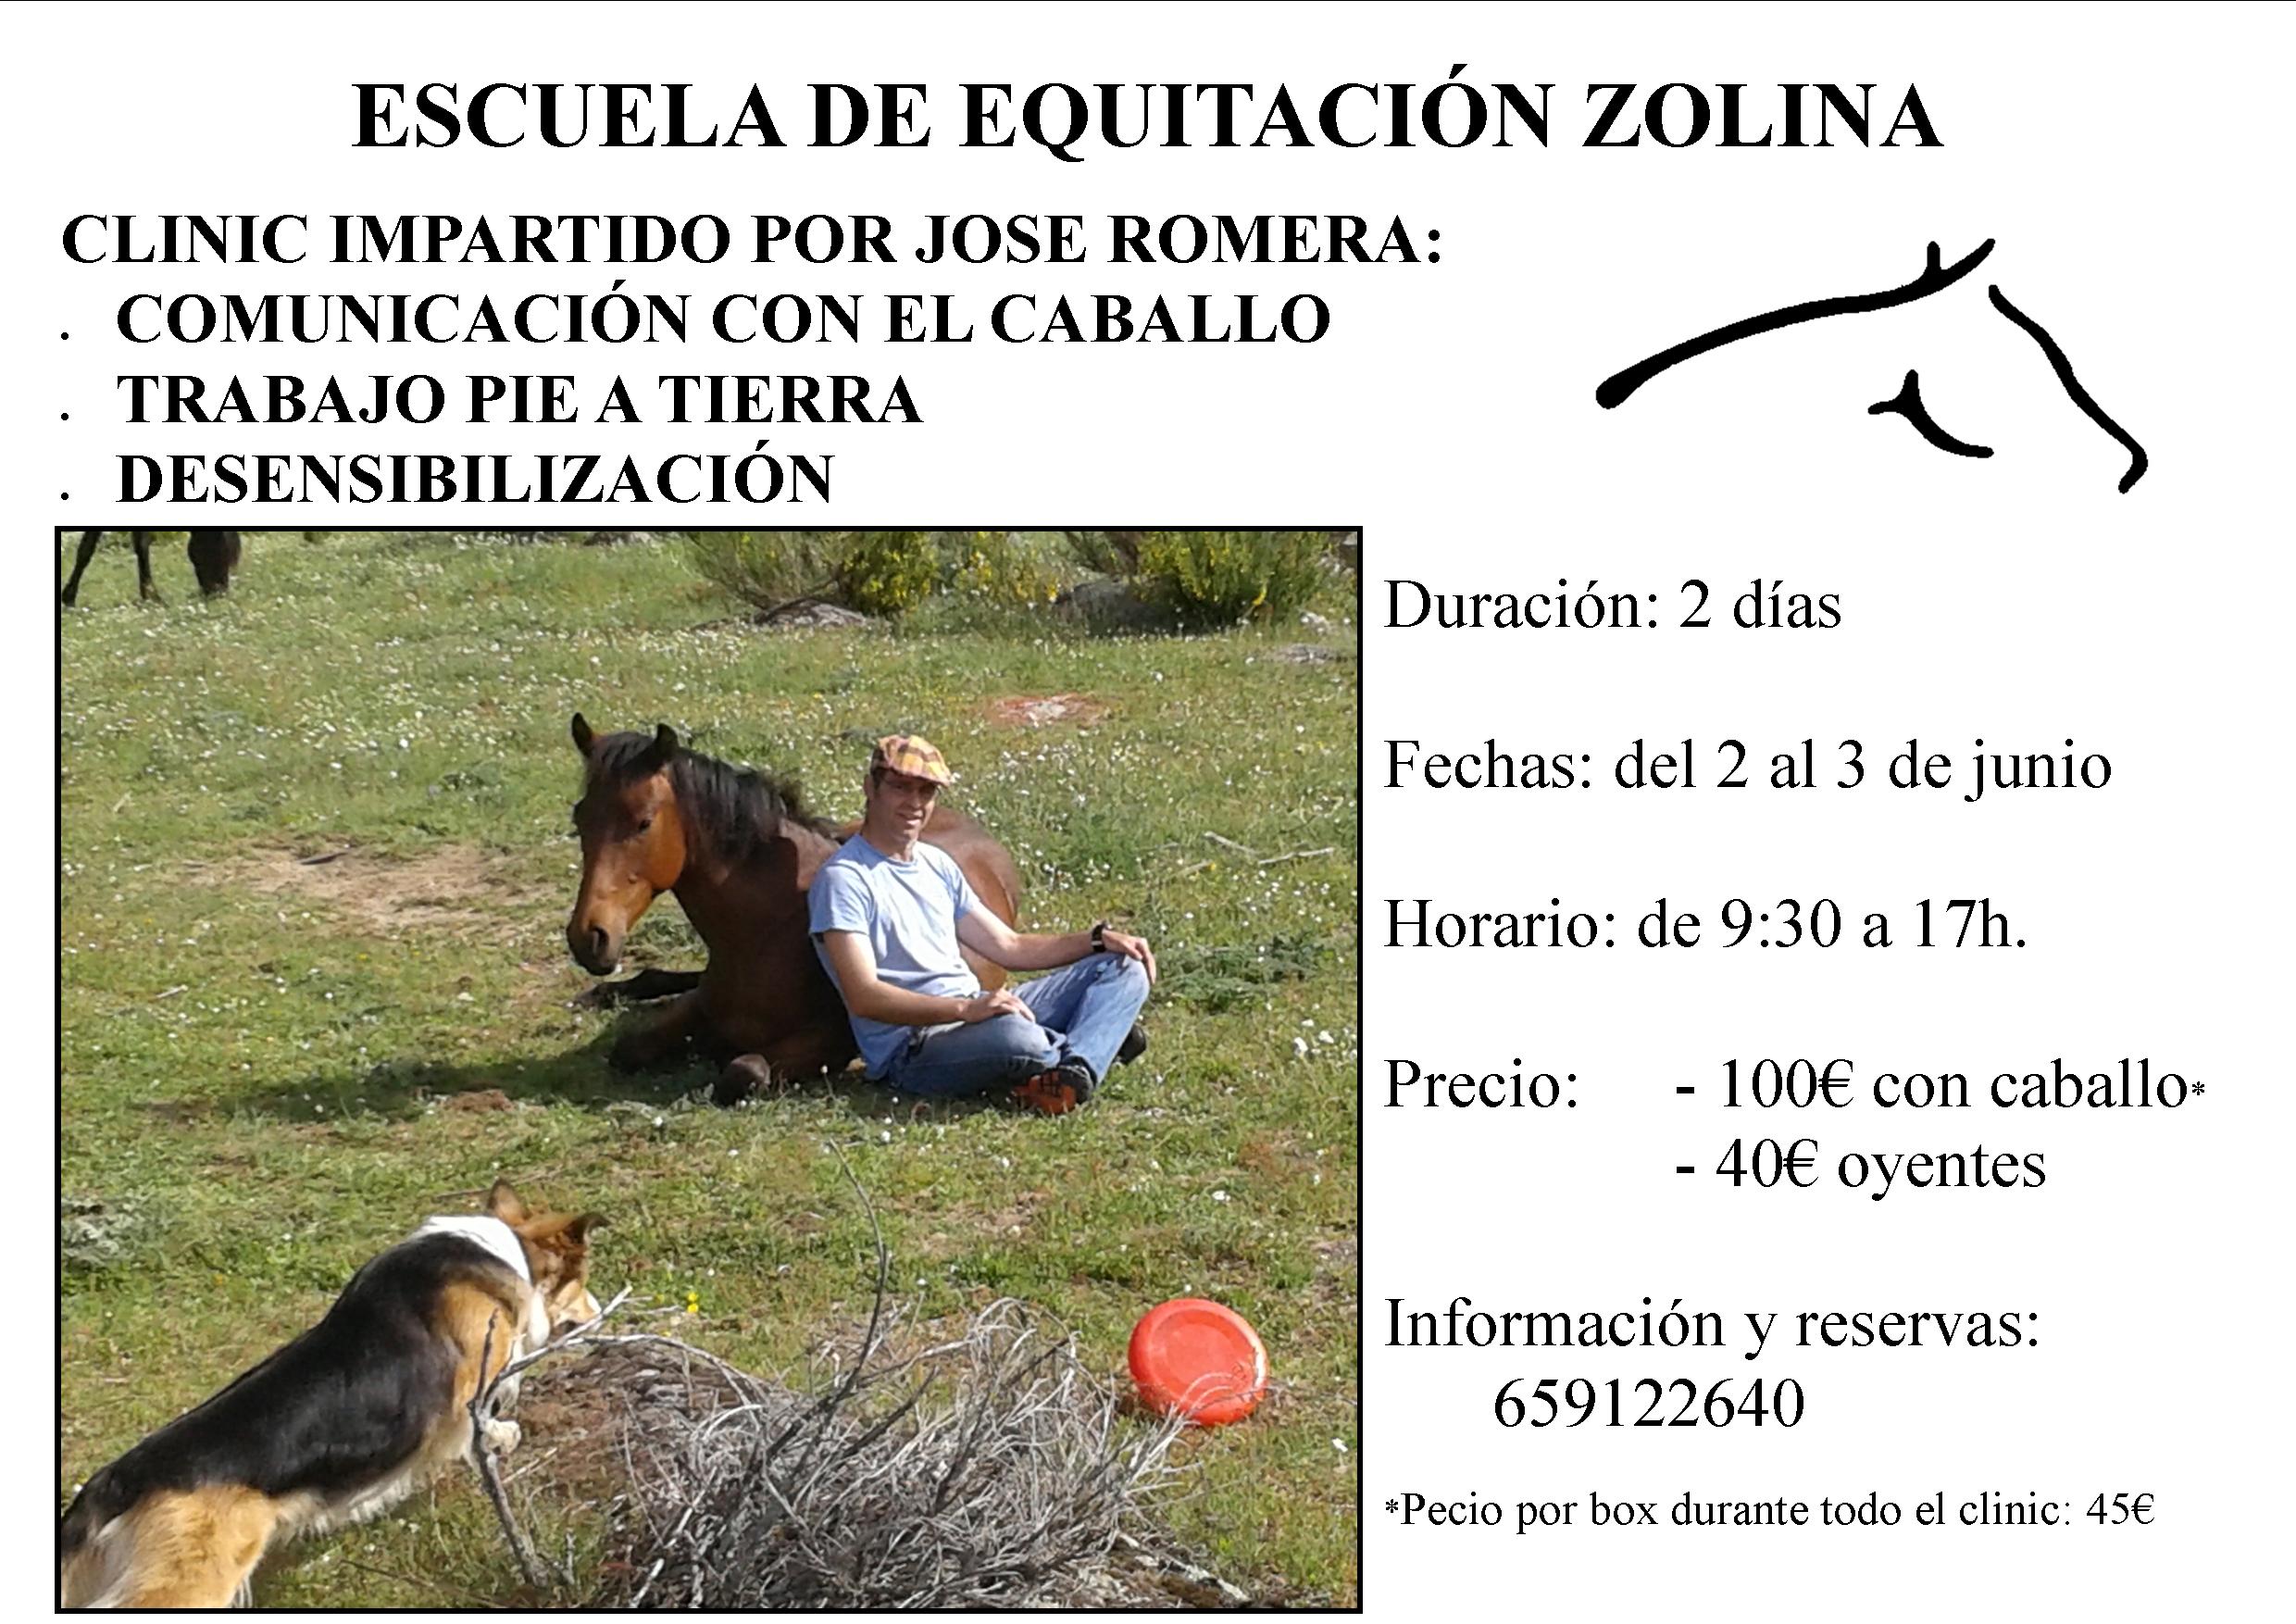 Clinic impartido por Jose Romera los días 2 y 3 de junio en Zolina